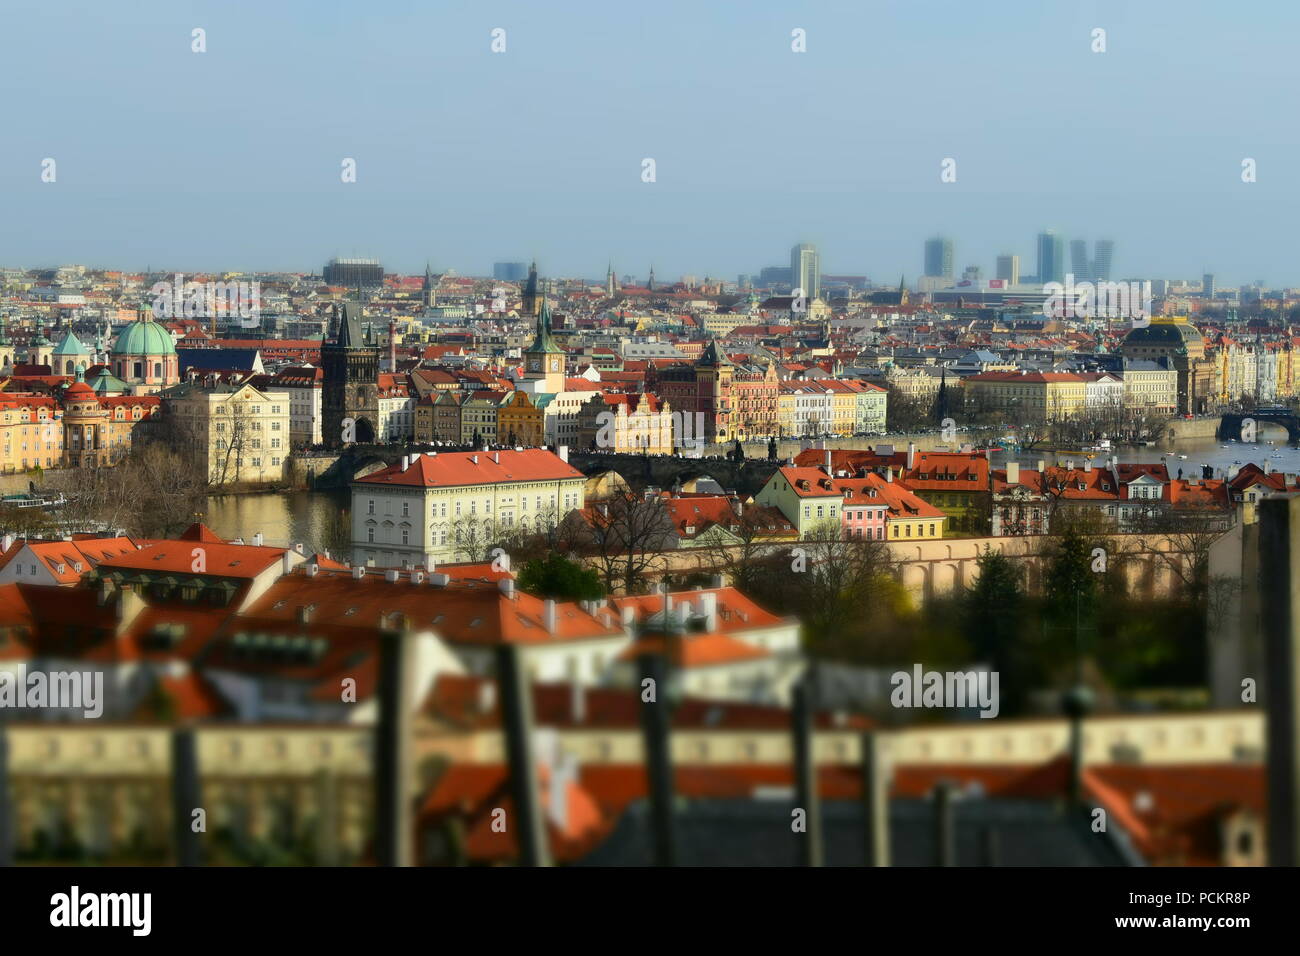 Prague est la capitale et la plus grande ville de la République tchèque, la 14e ville larges dans l'Union européenne et la capitale historique de la Bohême. Banque D'Images